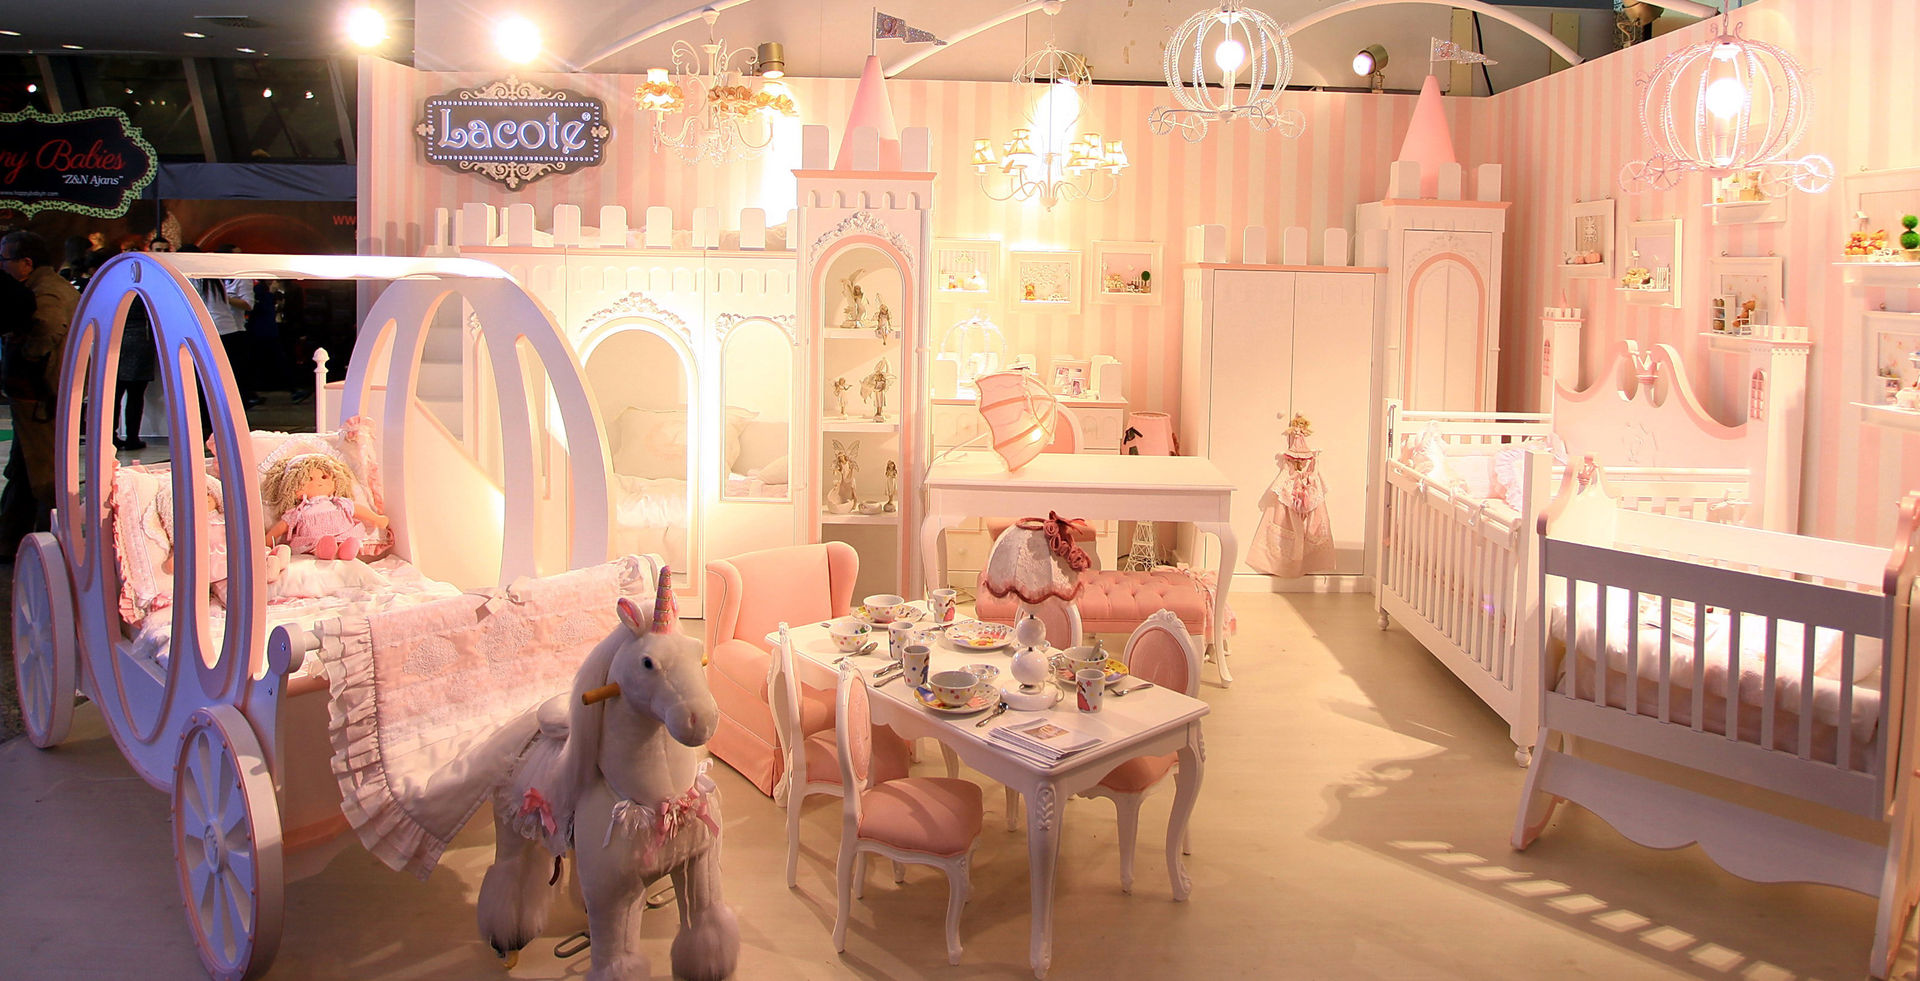 Lacote prenses çocuk ve bebek odası tasarımları, Lacote Design Lacote Design Nursery/kid’s room Beds & cribs